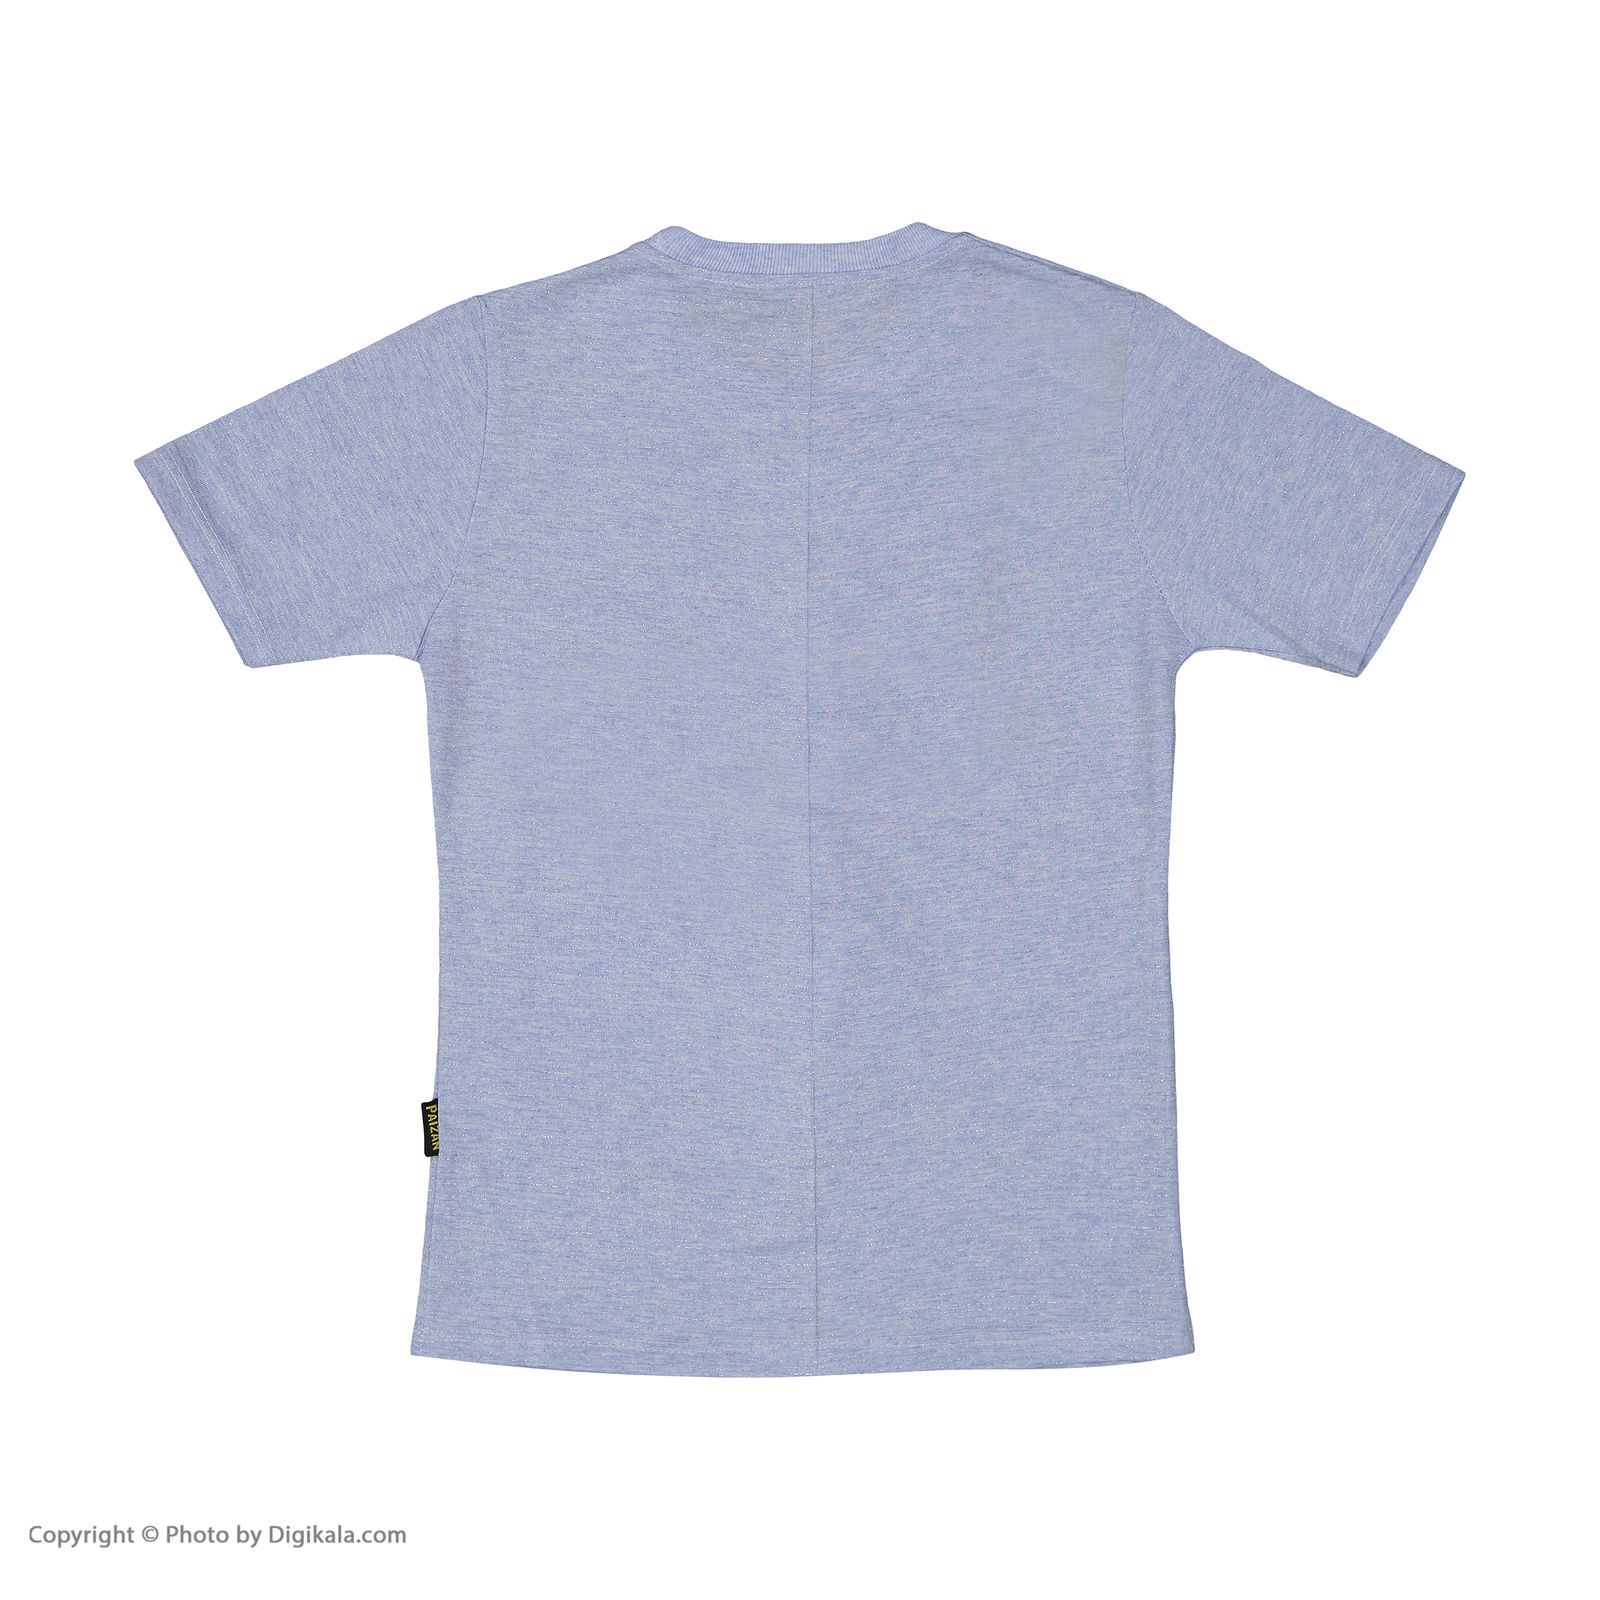 ست تی شرت و شلوارک دخترانه بانالی مدل هیلاری کد 3551 -  - 6